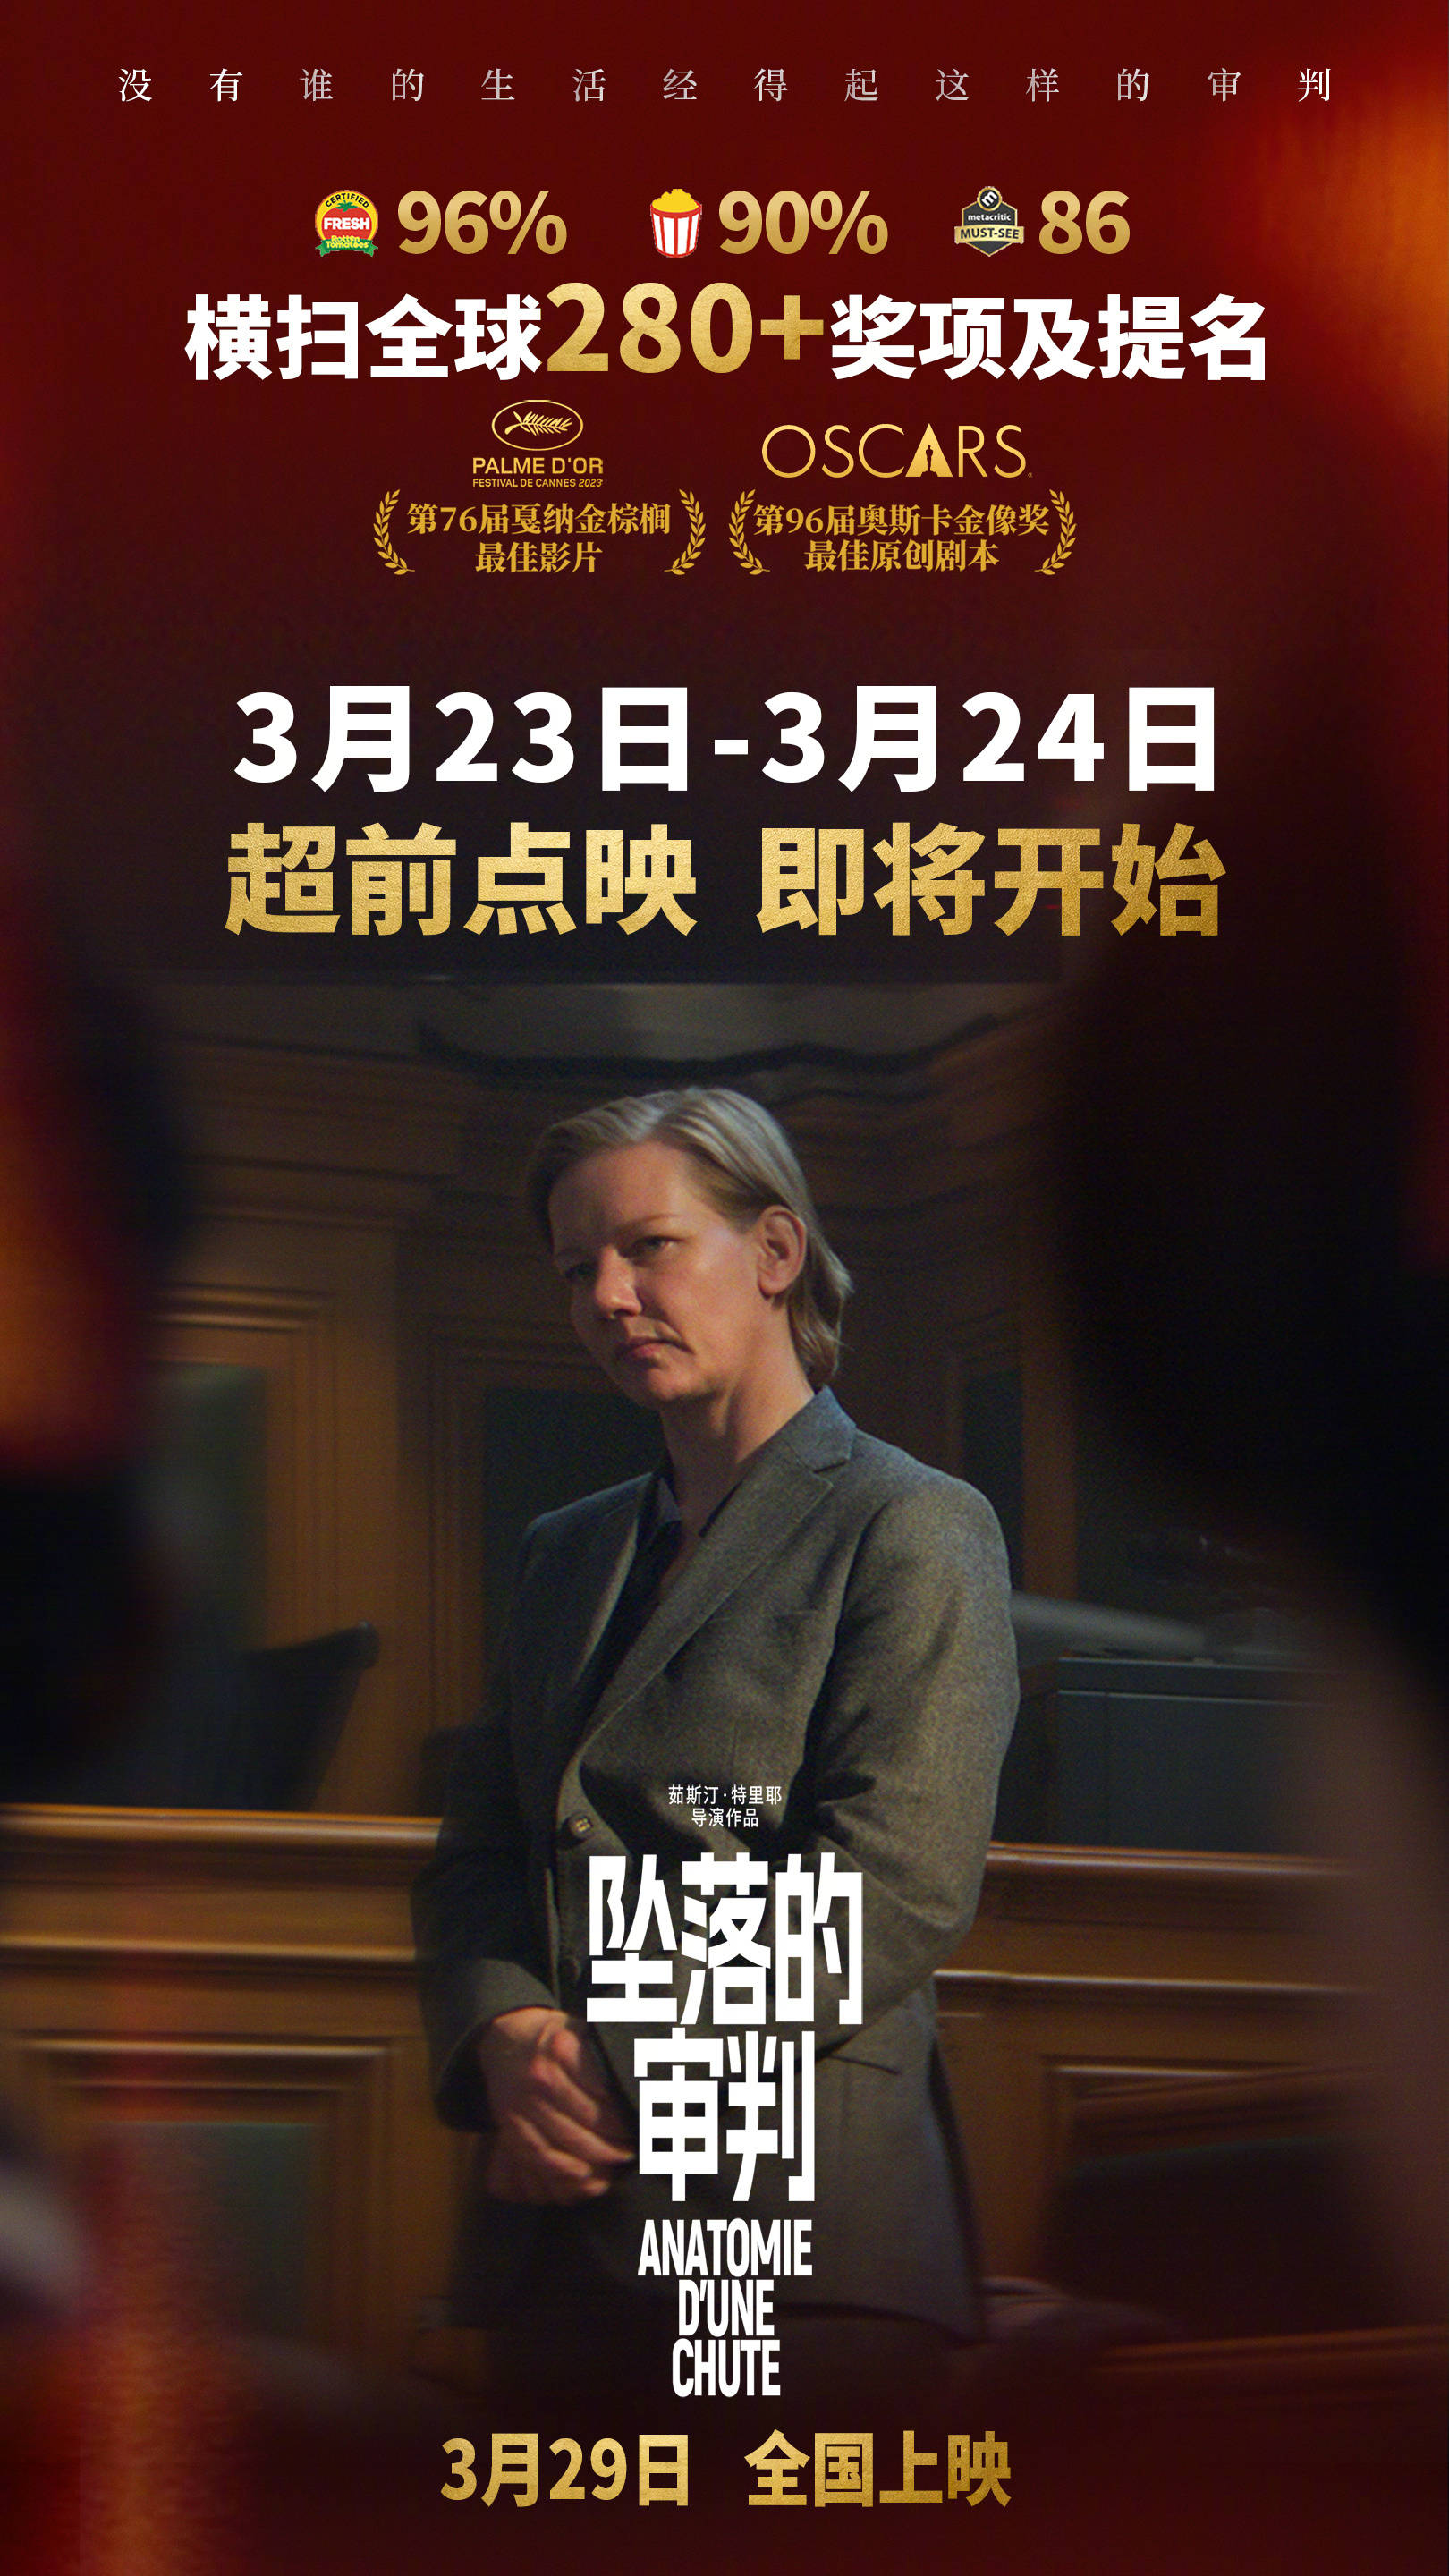 戛纳金棕榈大奖片《坠落的审判》将于3月23日-24日全国点映 3月29日正式公映封面图